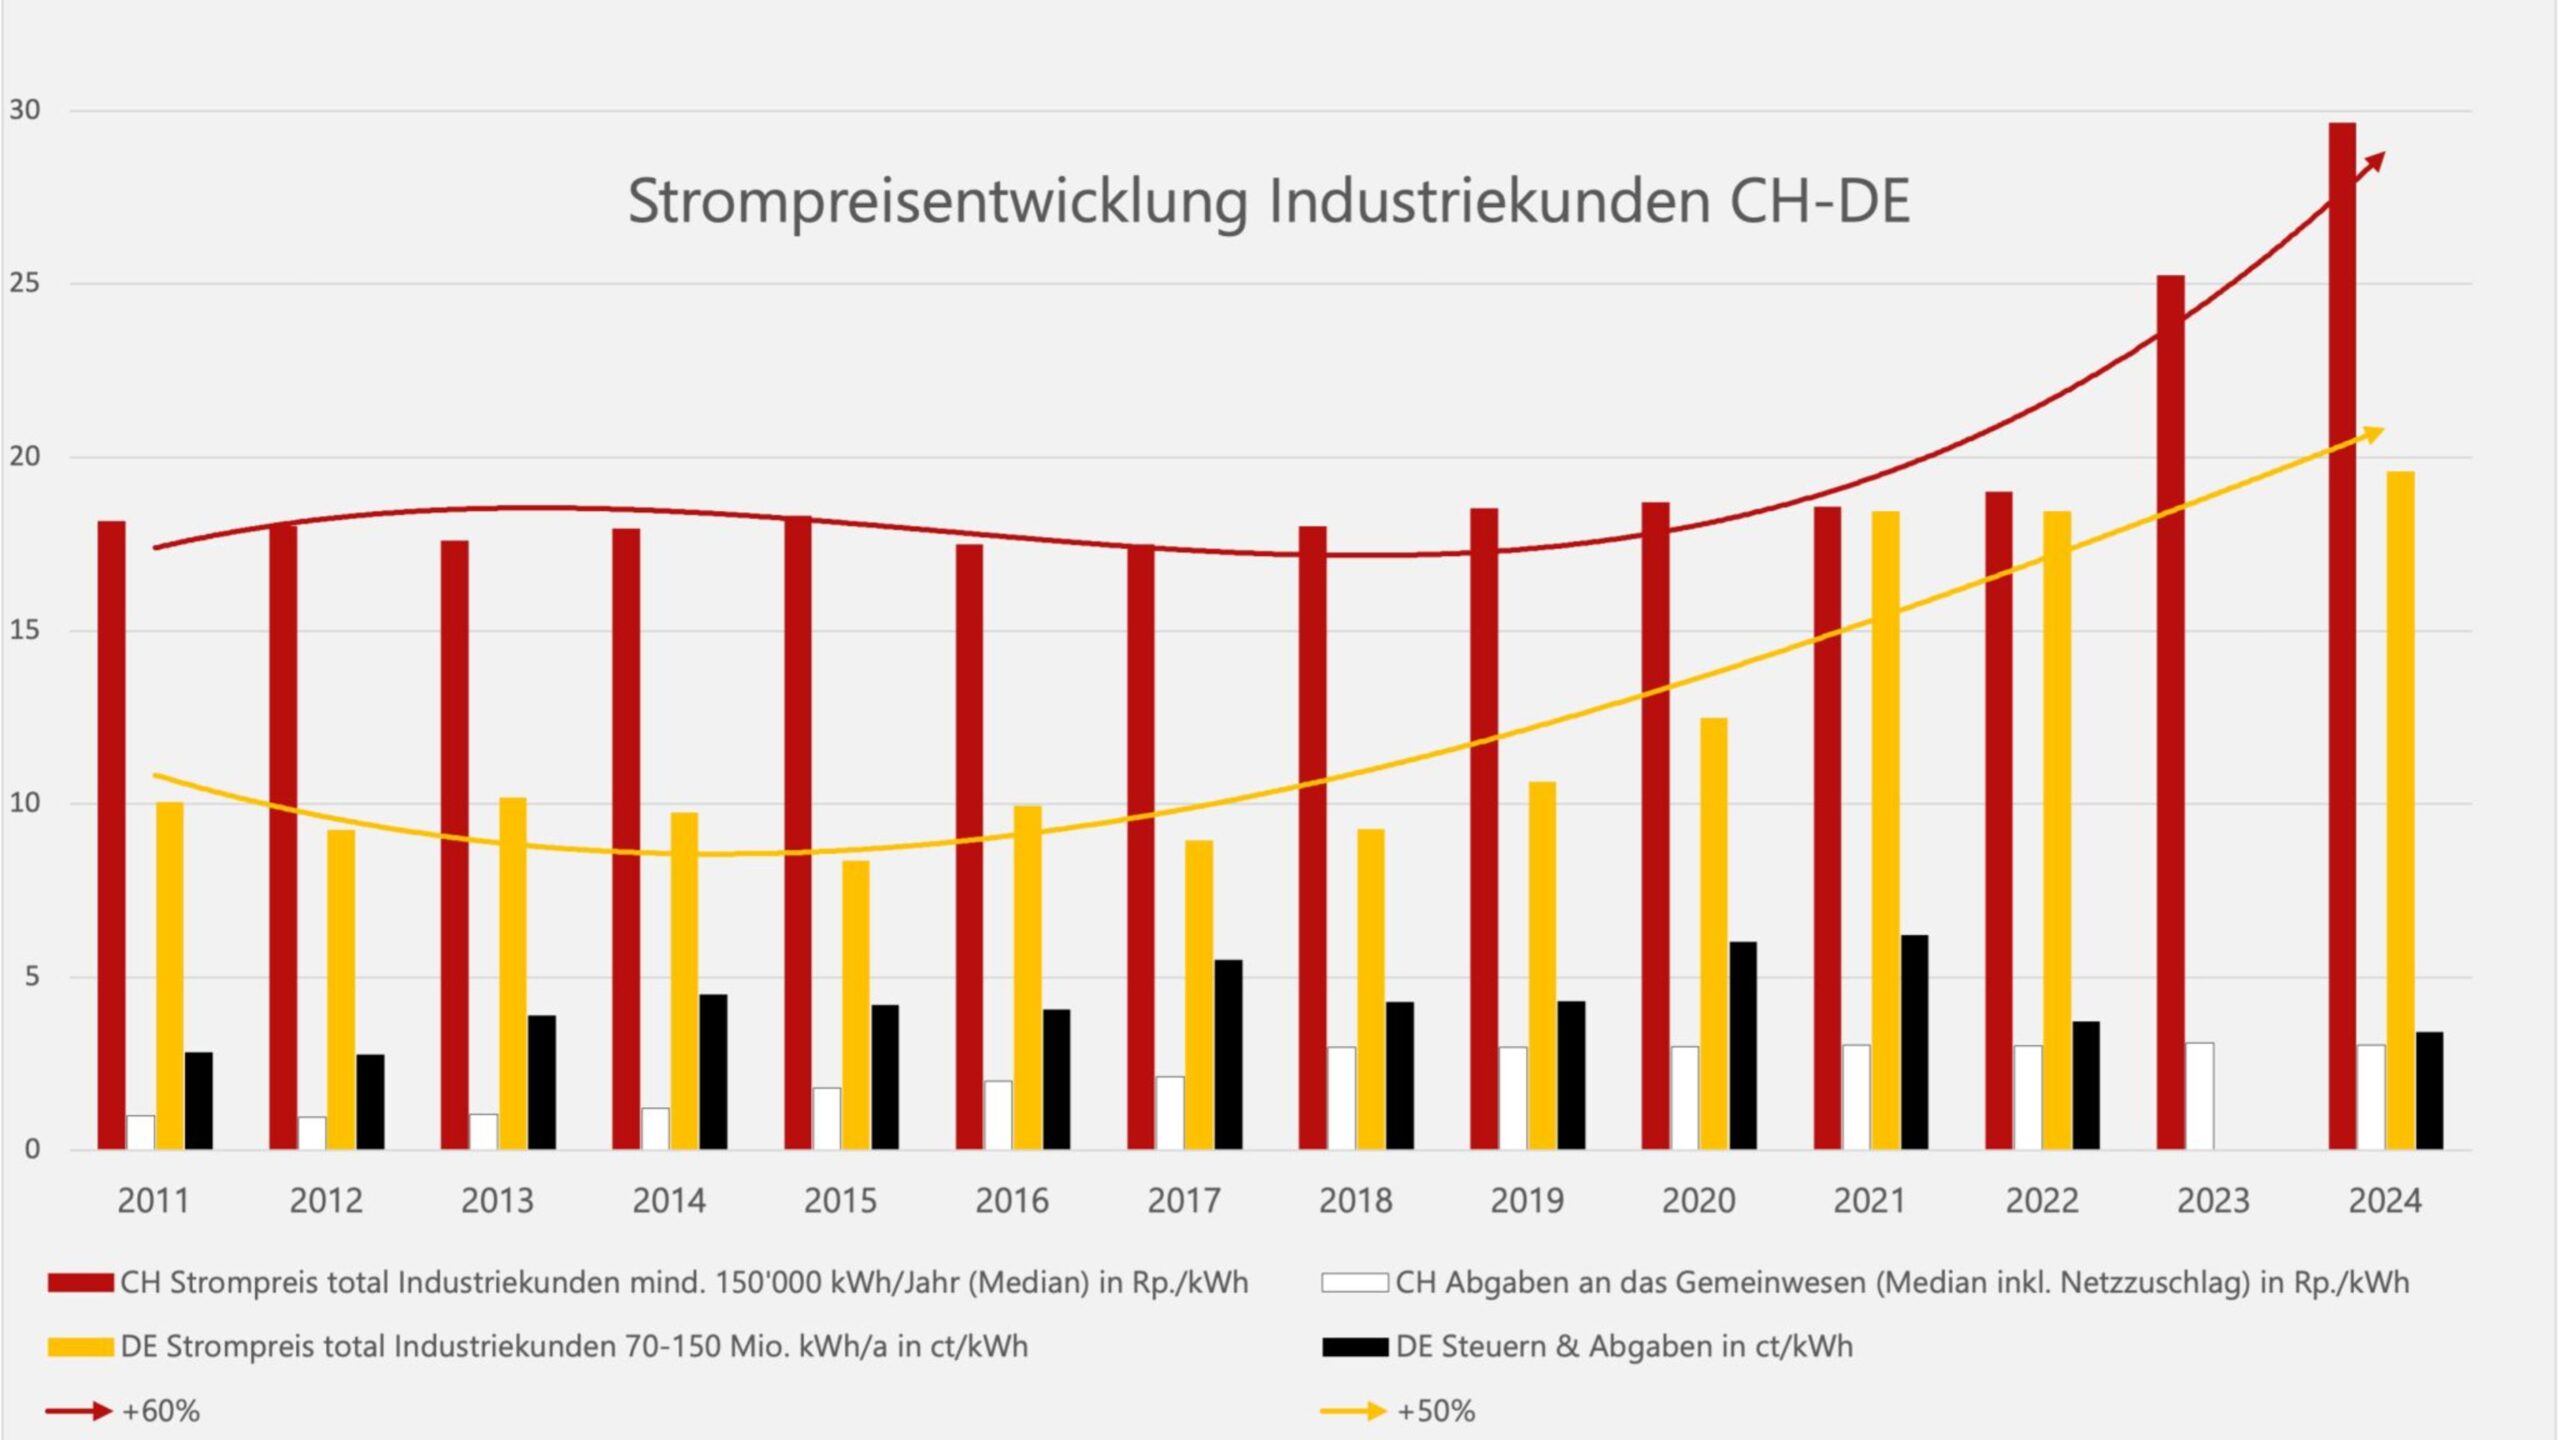 Strompreisentwicklung-Industriekunden-CH-DE_1-scaled-aspect-ratio-2560-1440